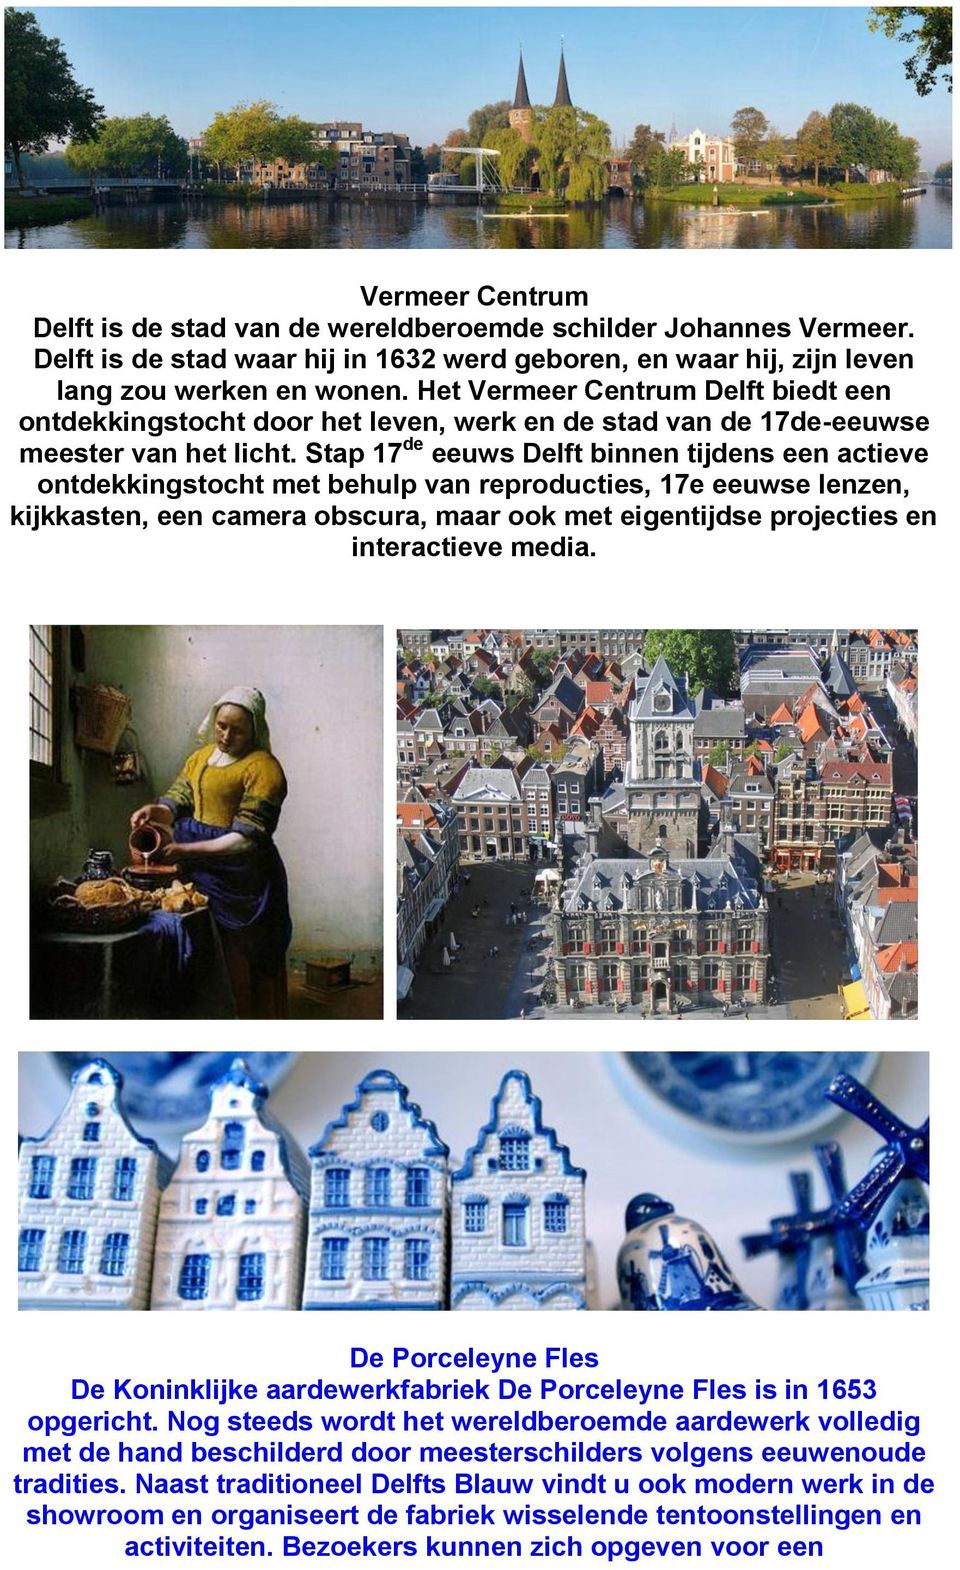 Stap 17 de eeuws Delft binnen tijdens een actieve ontdekkingstocht met behulp van reproducties, 17e eeuwse lenzen, kijkkasten, een camera obscura, maar ook met eigentijdse projecties en interactieve